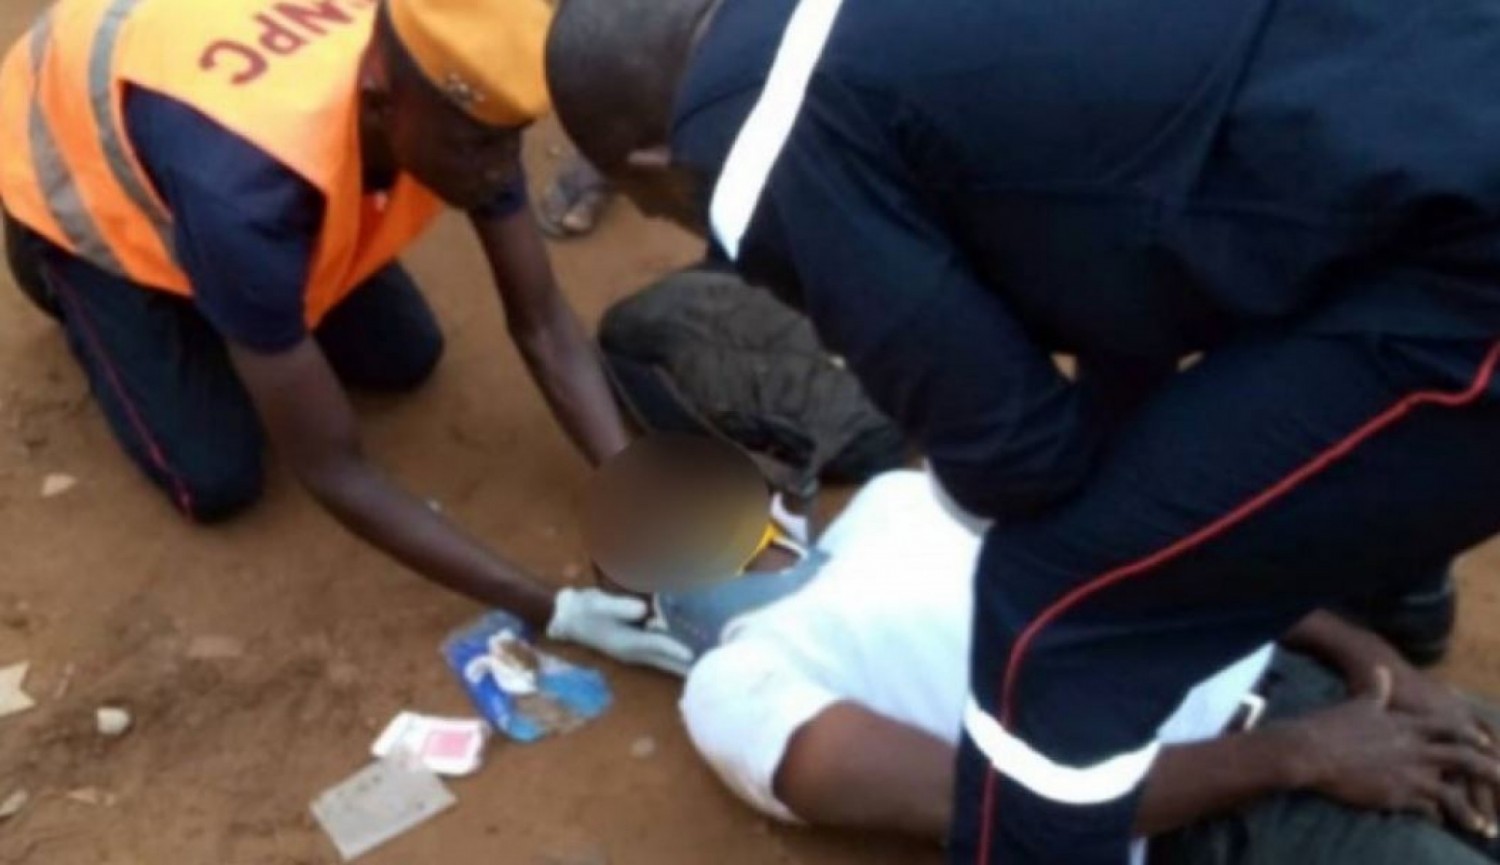 Côte d'Ivoire : Les pompiers-civils rendent la somme de 7 millions de FCFA retrouvés sur une victime d'un accident de la circulation